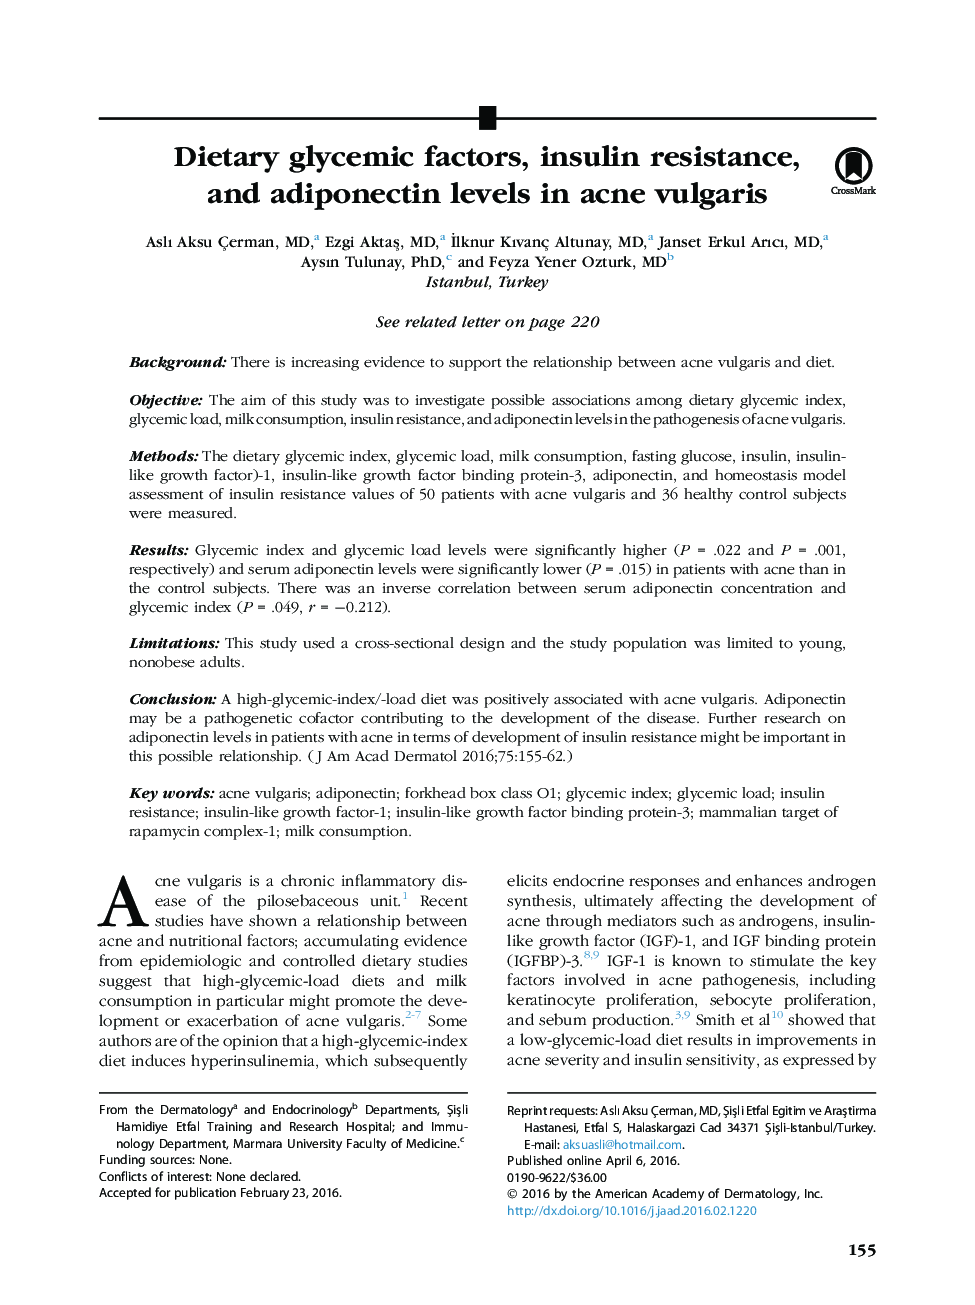 اصل مقاله عوامل گلیسمی غذایی، مقاومت به انسولین و میزان آدیپونکتین در آکنه ولگاریس 